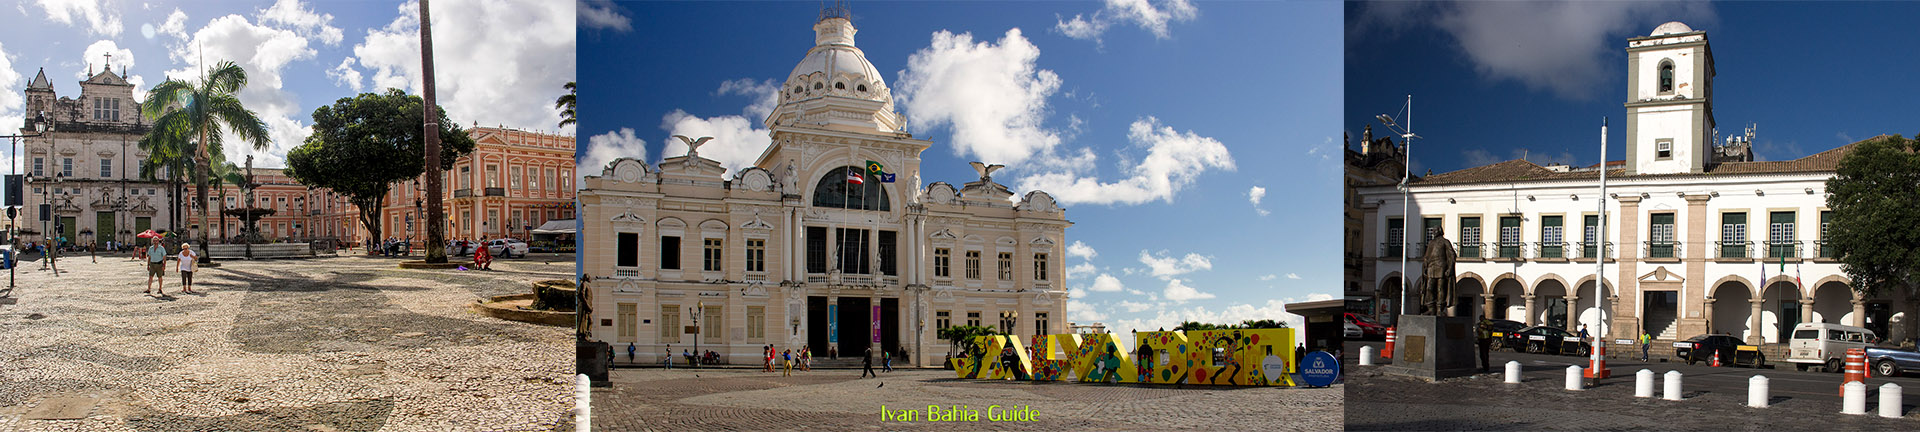 Ivan Bahia Guide, visitez Salvador da Bahia (première capitale du Brésil) culture, architecture et culinaire